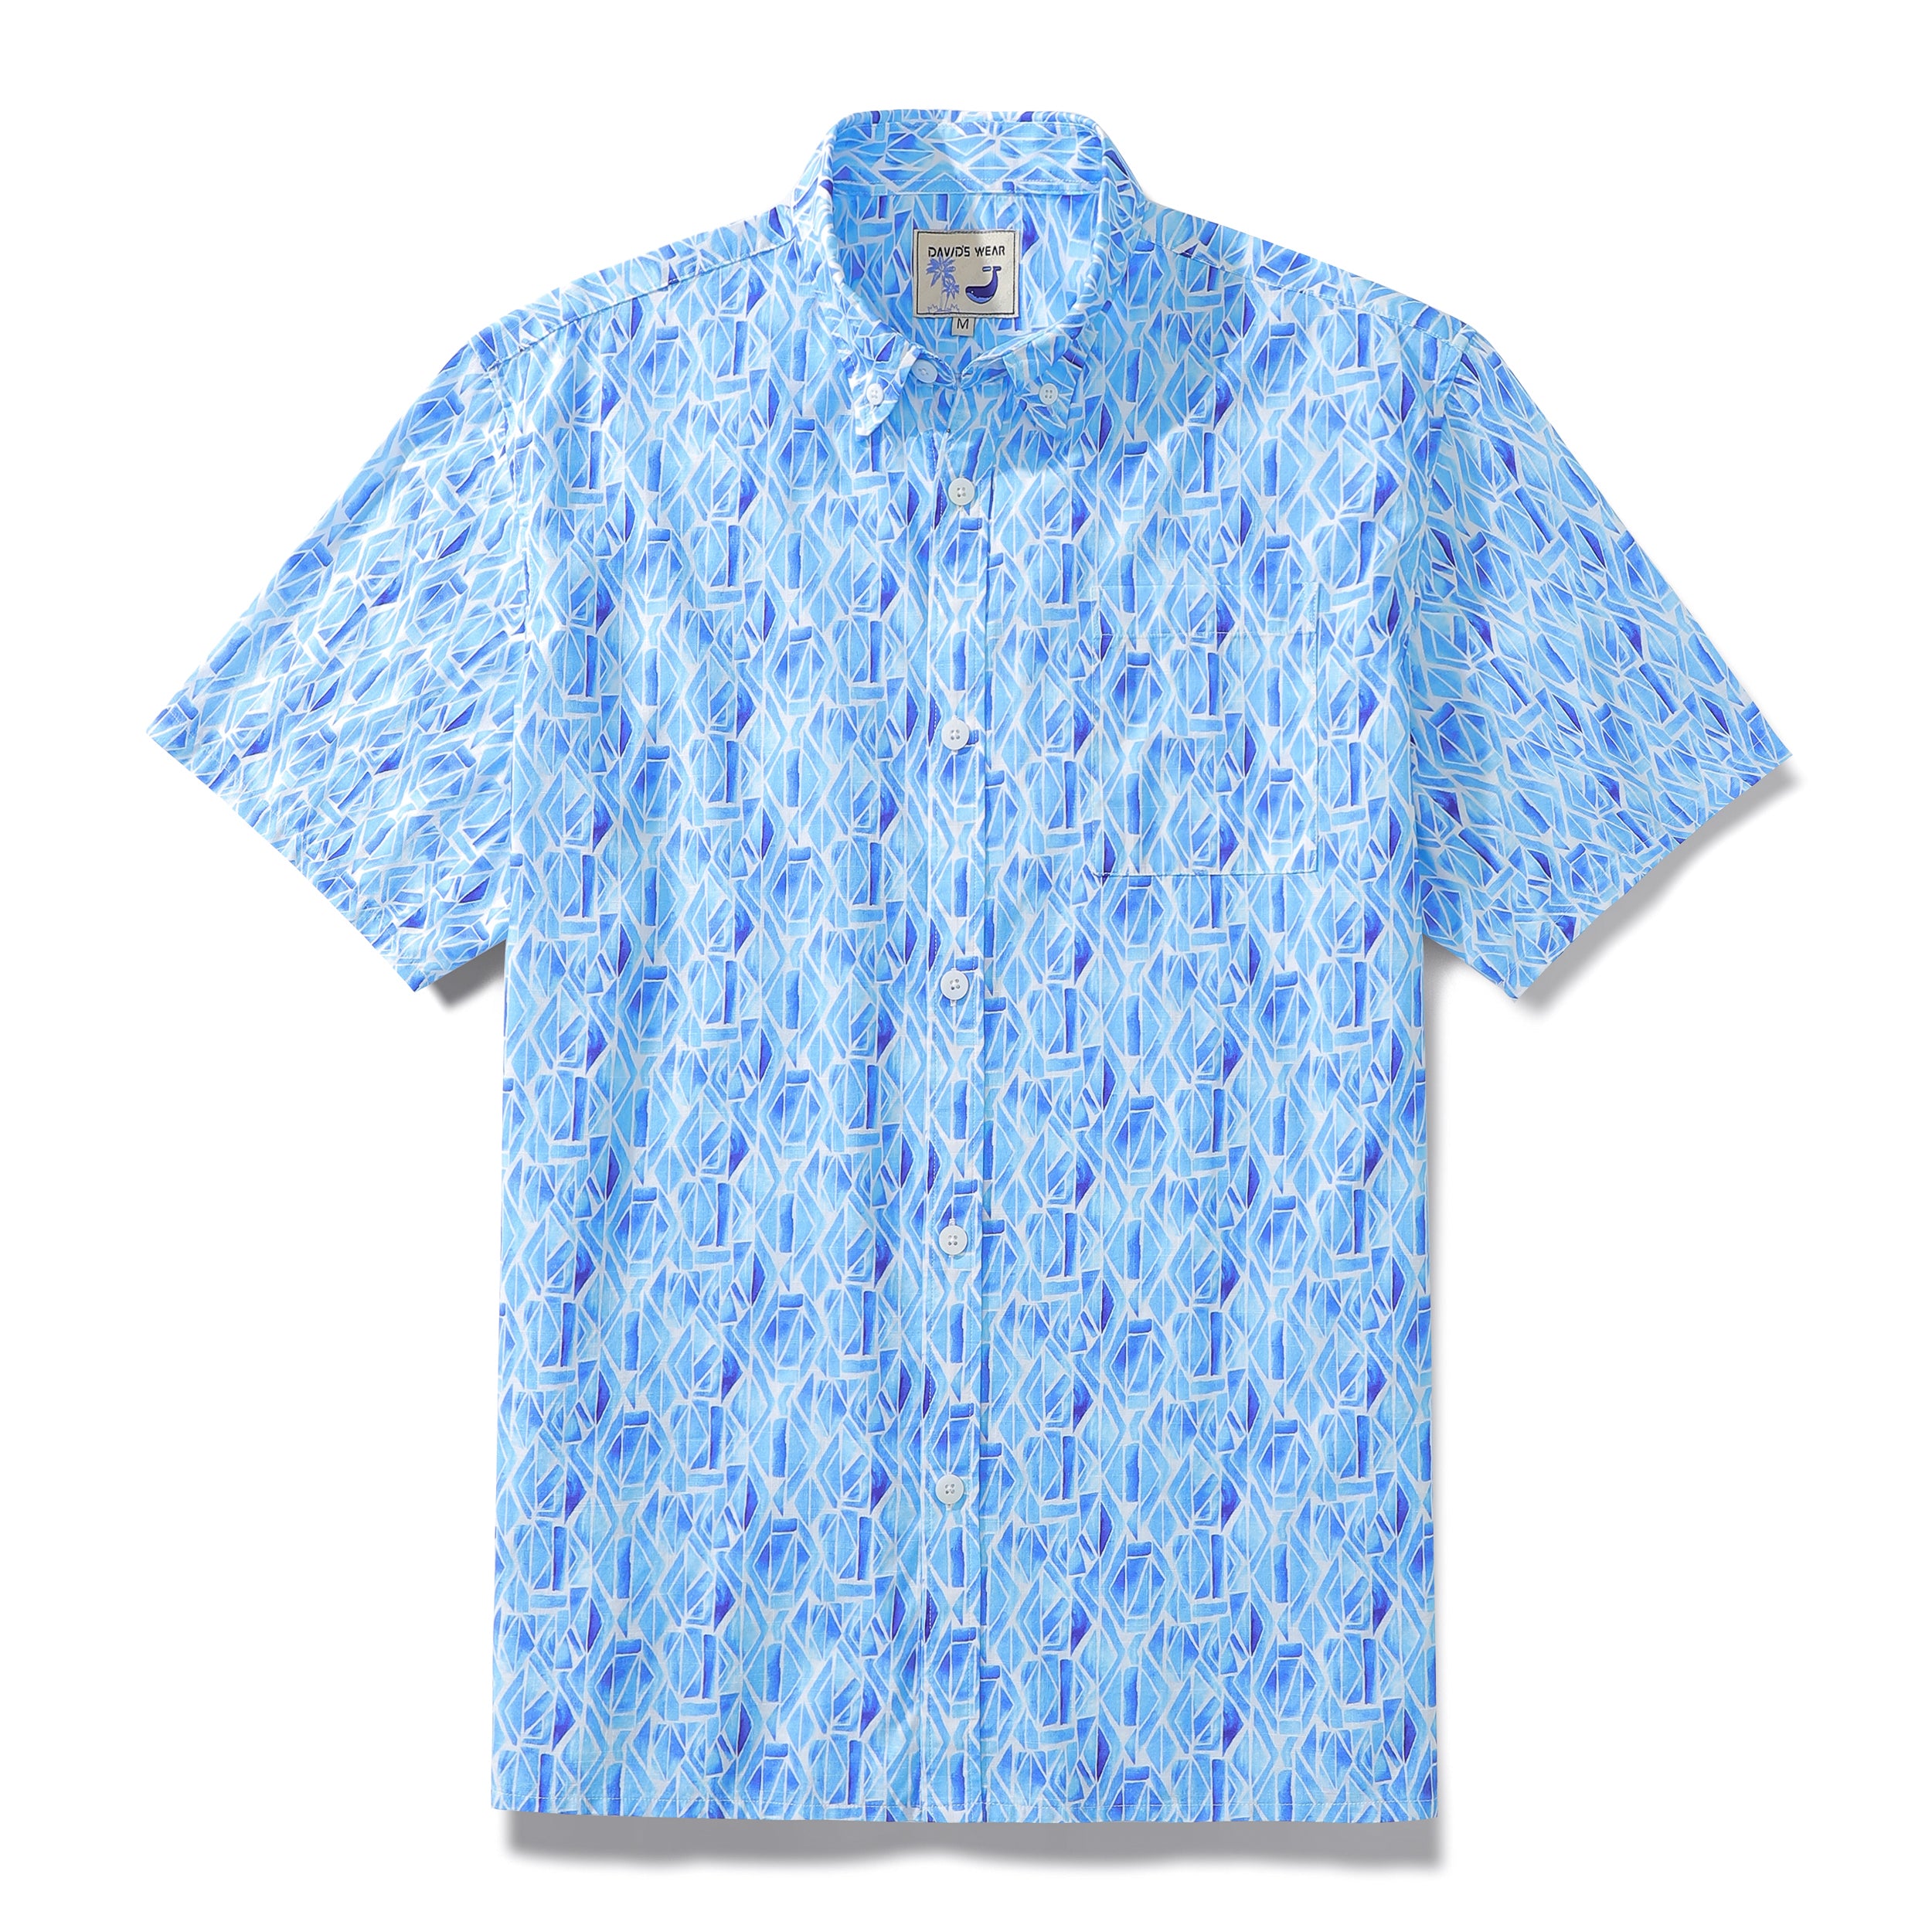 Men's Short Sleeve Shirt Men Hawaii Blue Geometry Print Cotton Button Down